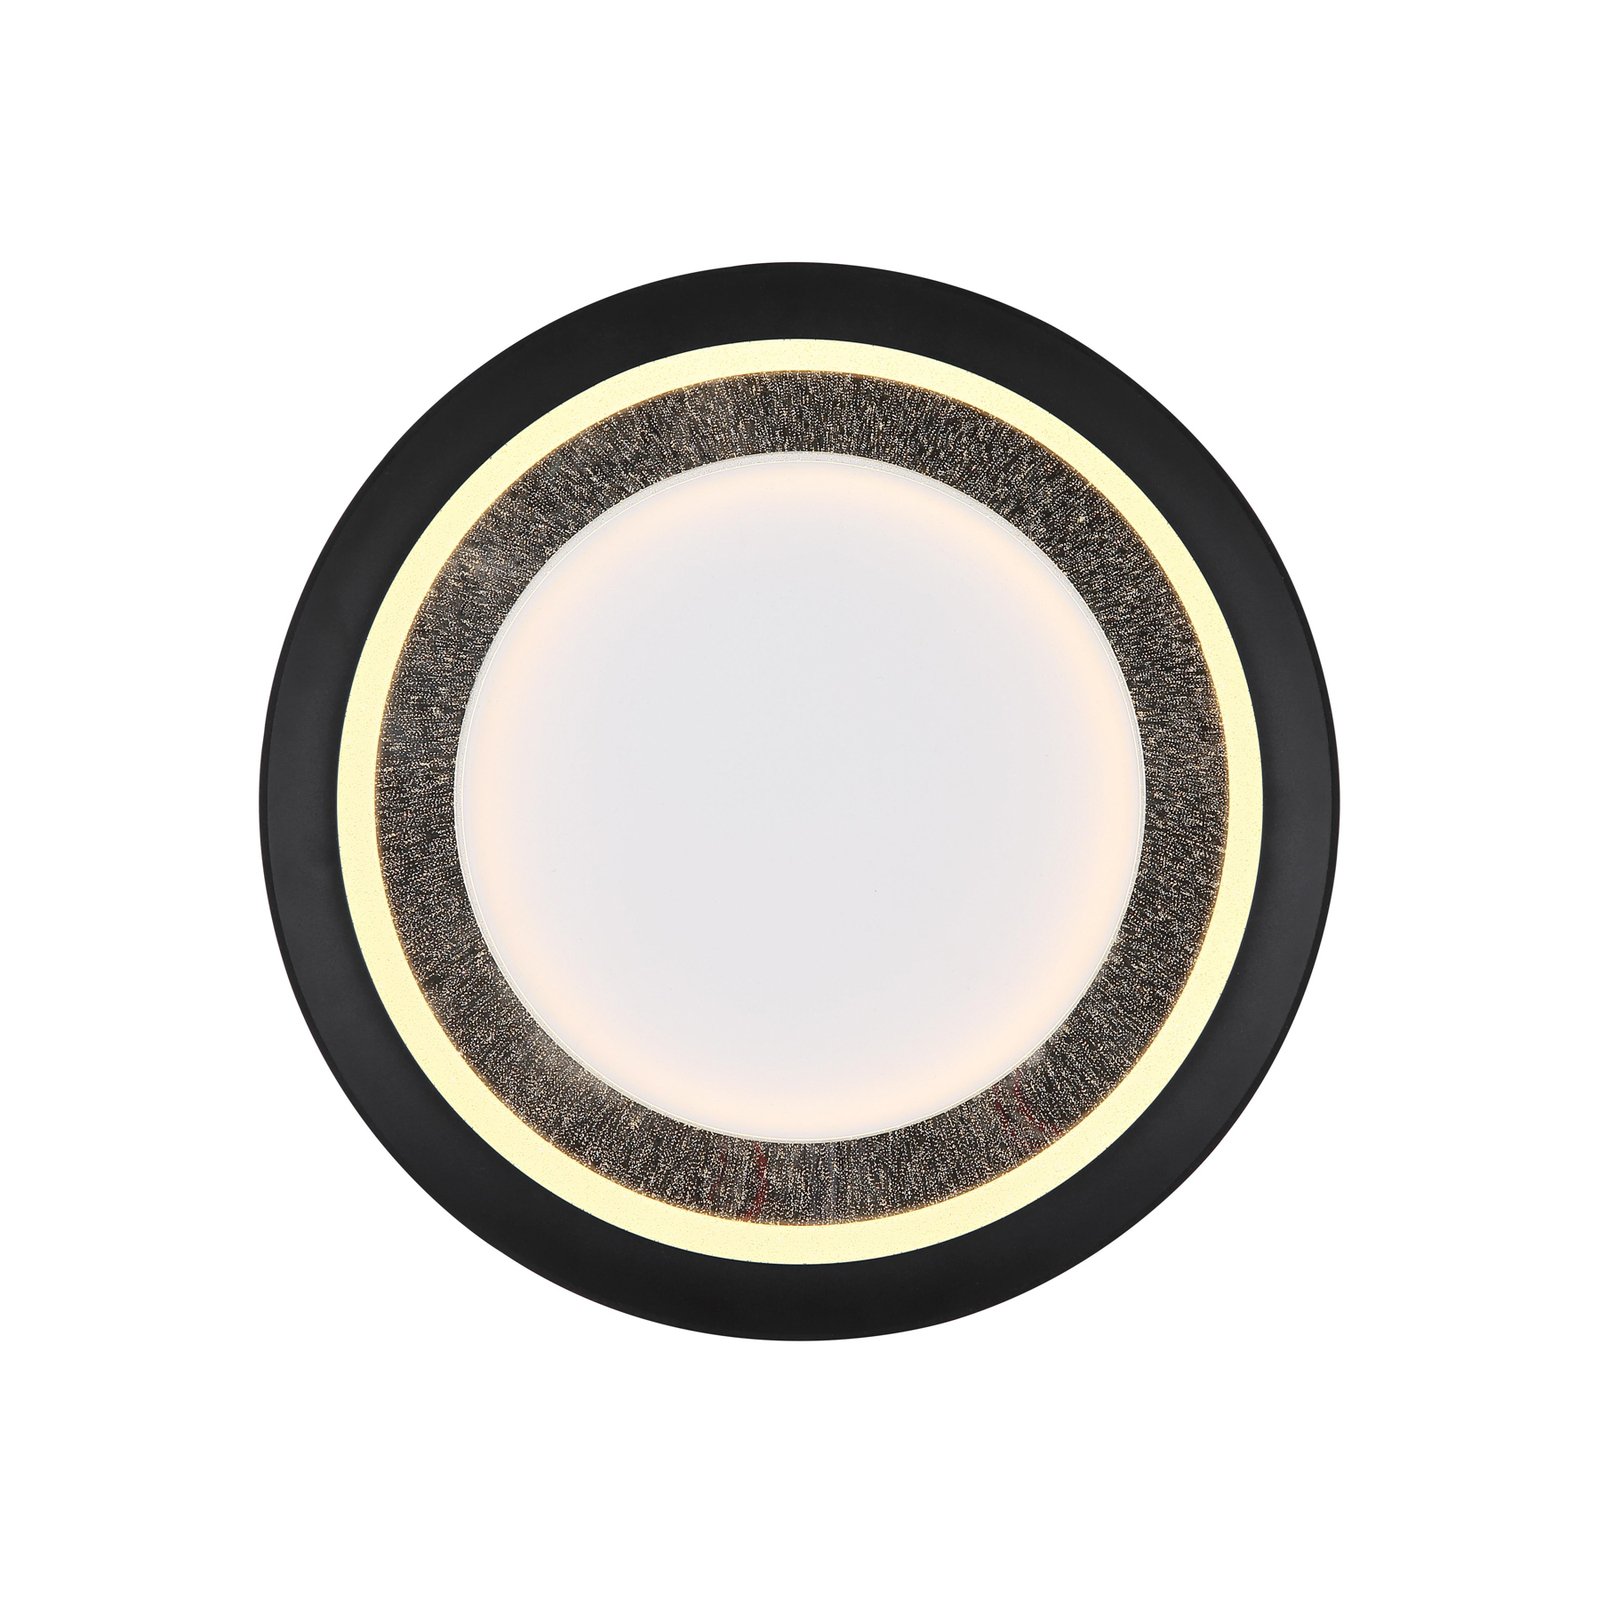 LED-Deckenleuchte Clarino, Ø 36 cm, schwarz/weiß, Acryl